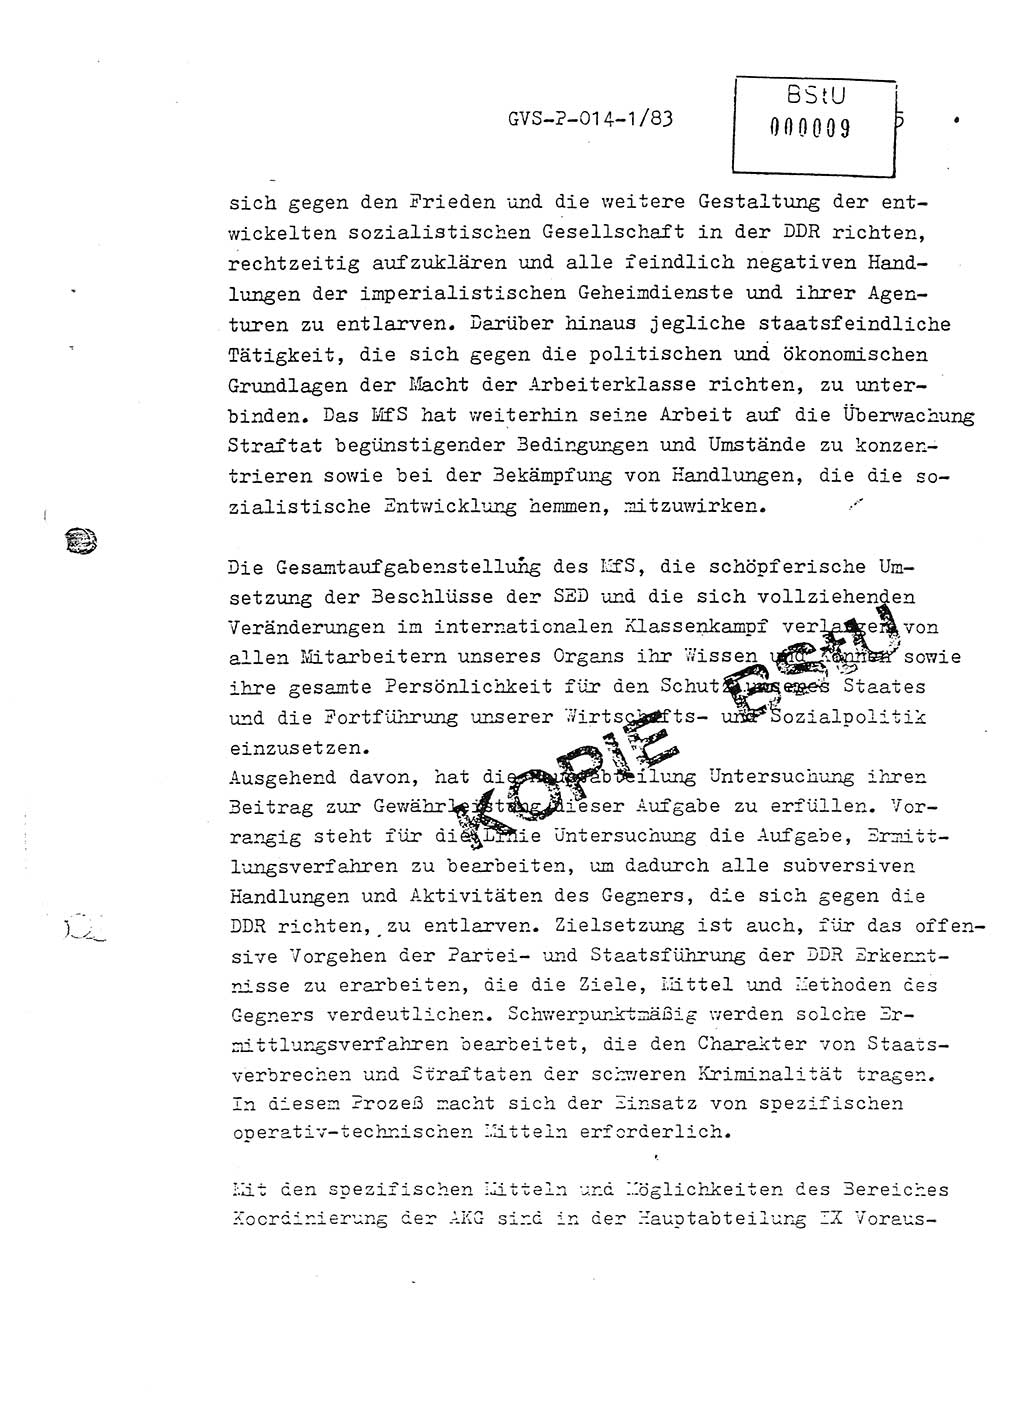 Fachschulabschlußarbeit Leutnant Dirk Autentrieb (HA Ⅸ/AKG), Ministerium für Staatssicherheit (MfS) [Deutsche Demokratische Republik (DDR)], Hauptabteilung (HA) Ⅸ, Geheime Verschlußsache (GVS) P-014-1/83, Berlin 1983, Blatt 5 (FS-Abschl.-Arb. MfS DDR HA Ⅸ GVS P-014-1/83 1983, Bl. 5)